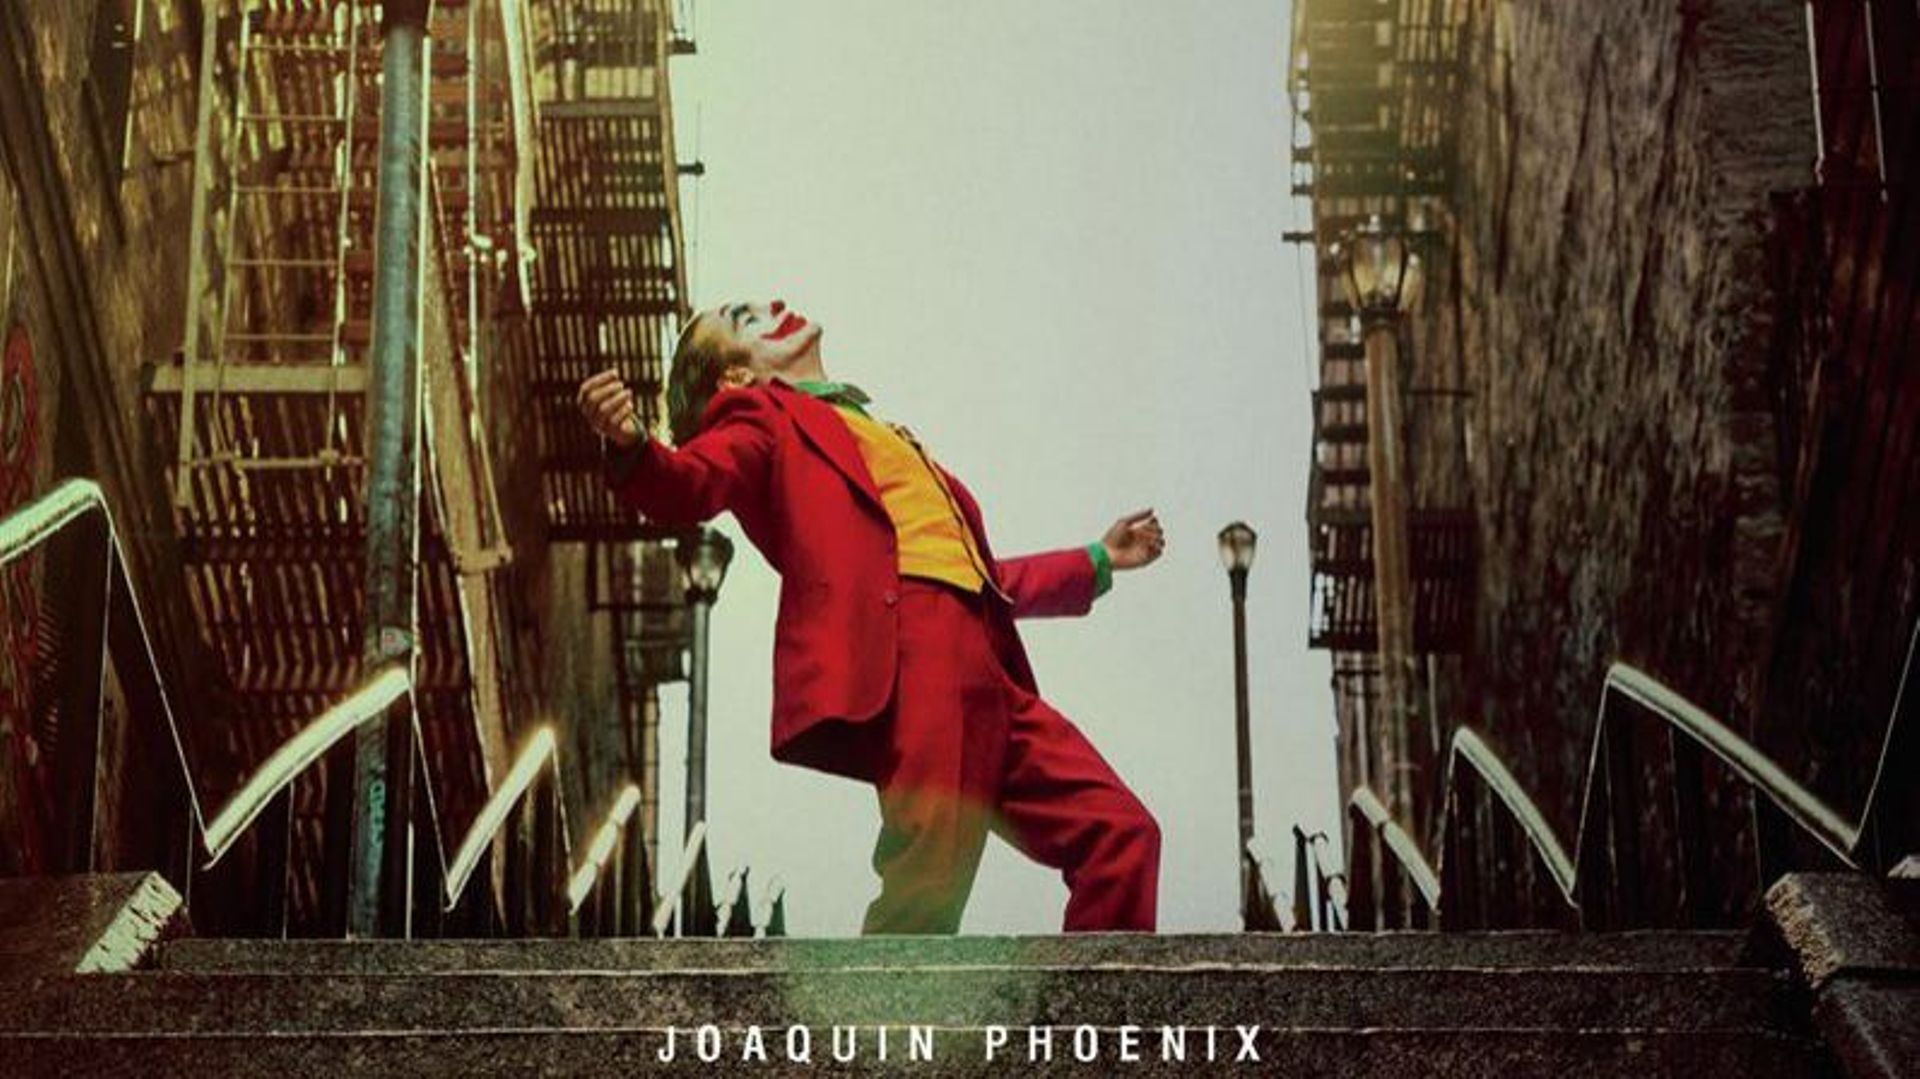 Le réalisateur de la fiction originale, Todd Phillips ("Very Bad Trip"), est en discussions pour diriger la suite de "Joker".